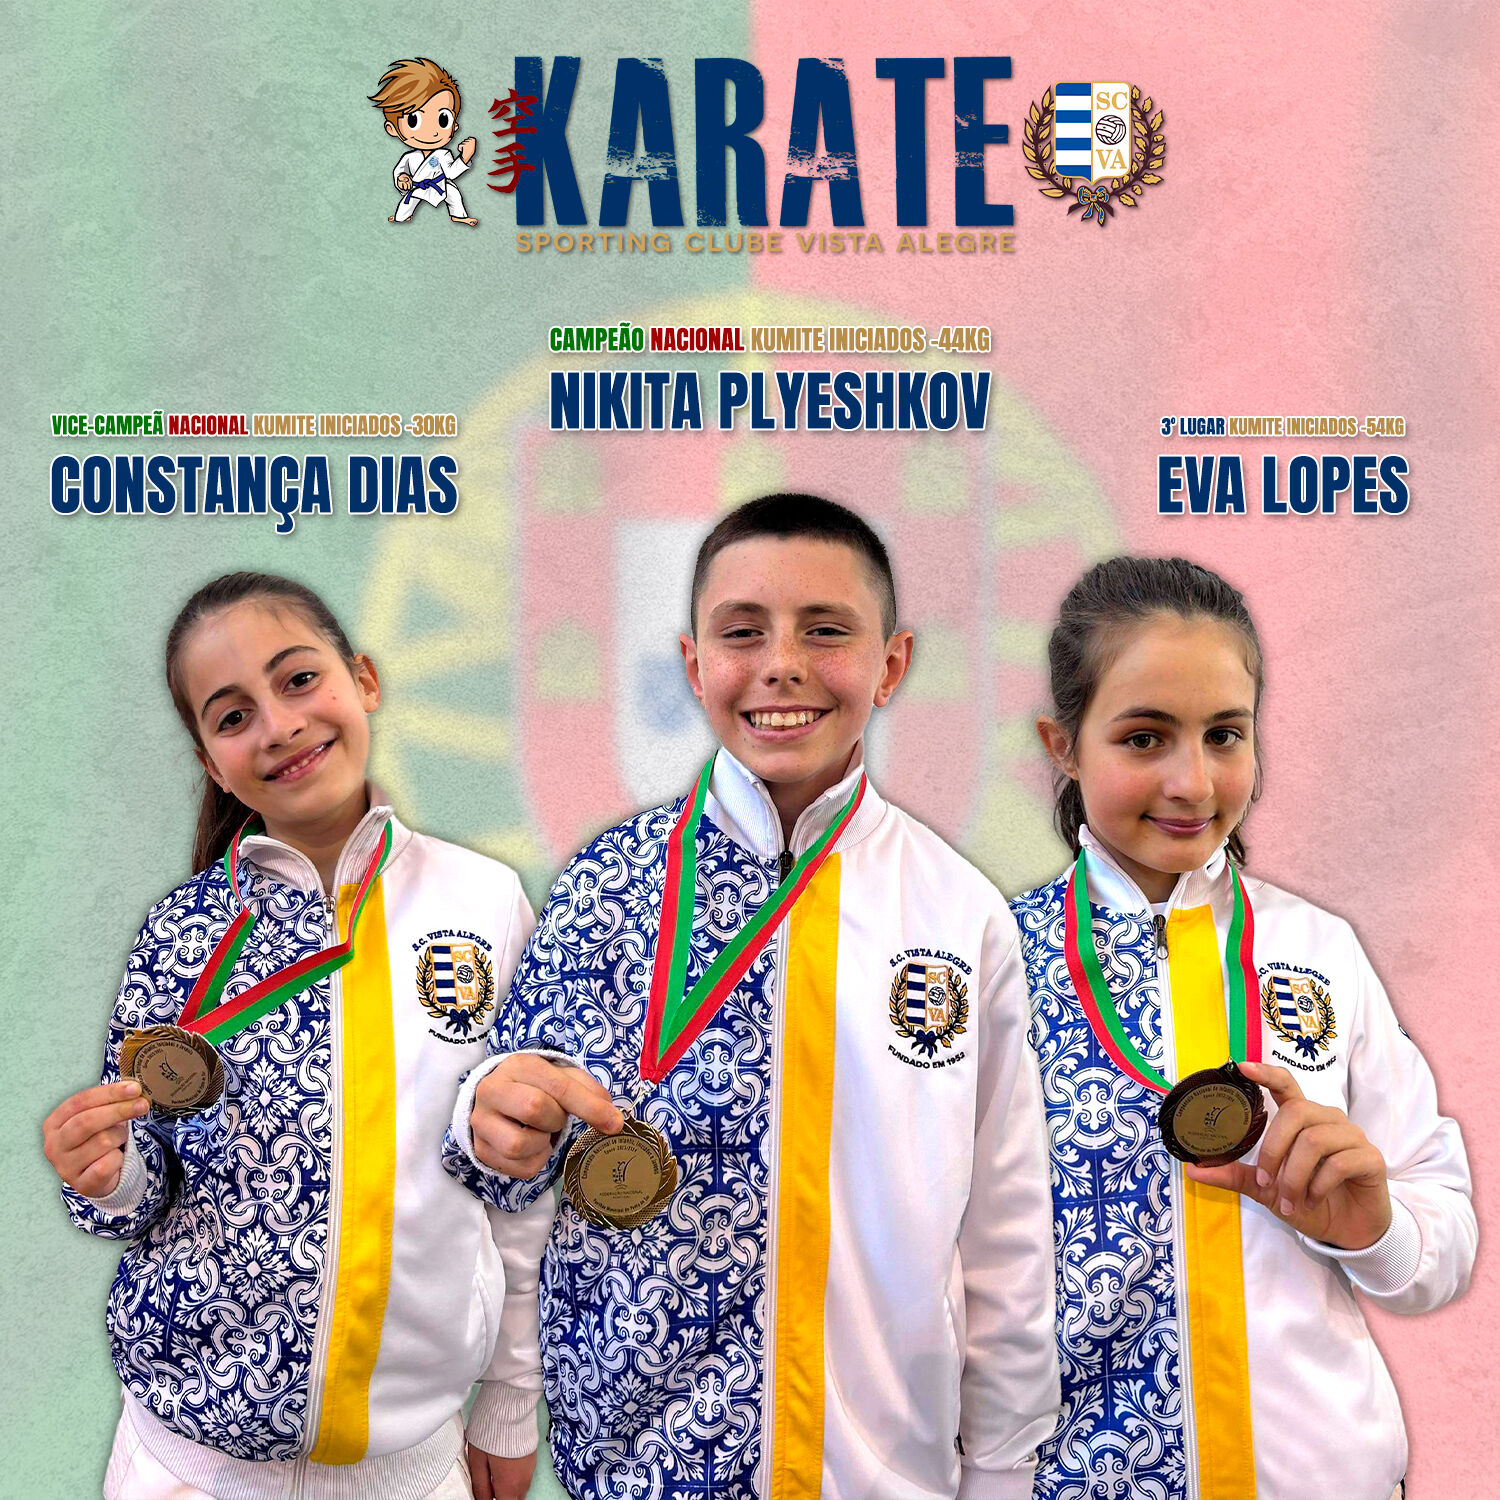 Karateca do SC Vista Alegre é Campeão Nacional Kumite Iniciados -44kg